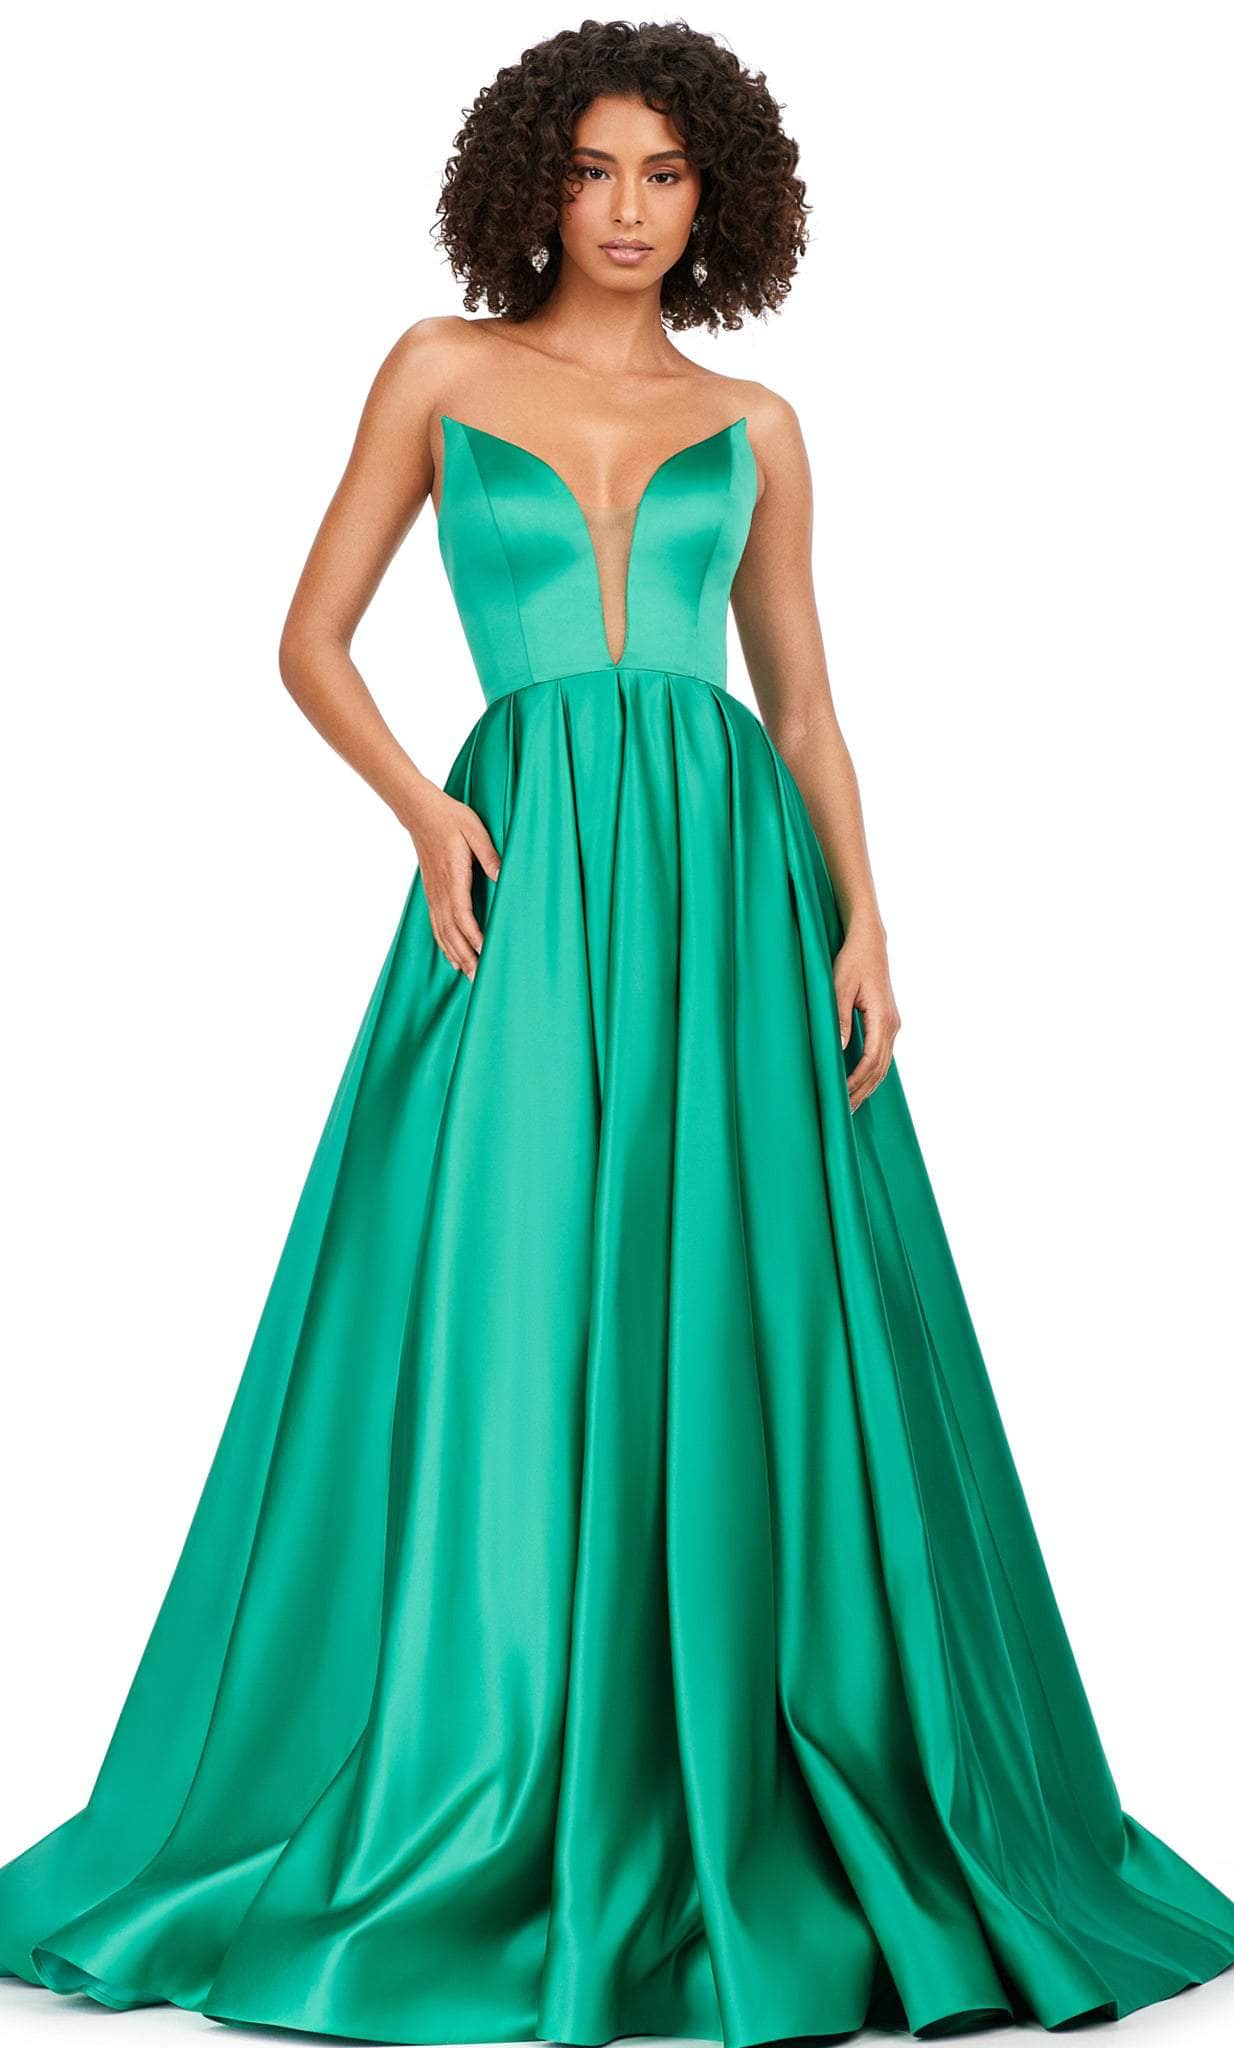 ashley lauren 11250 - strapless ballgown